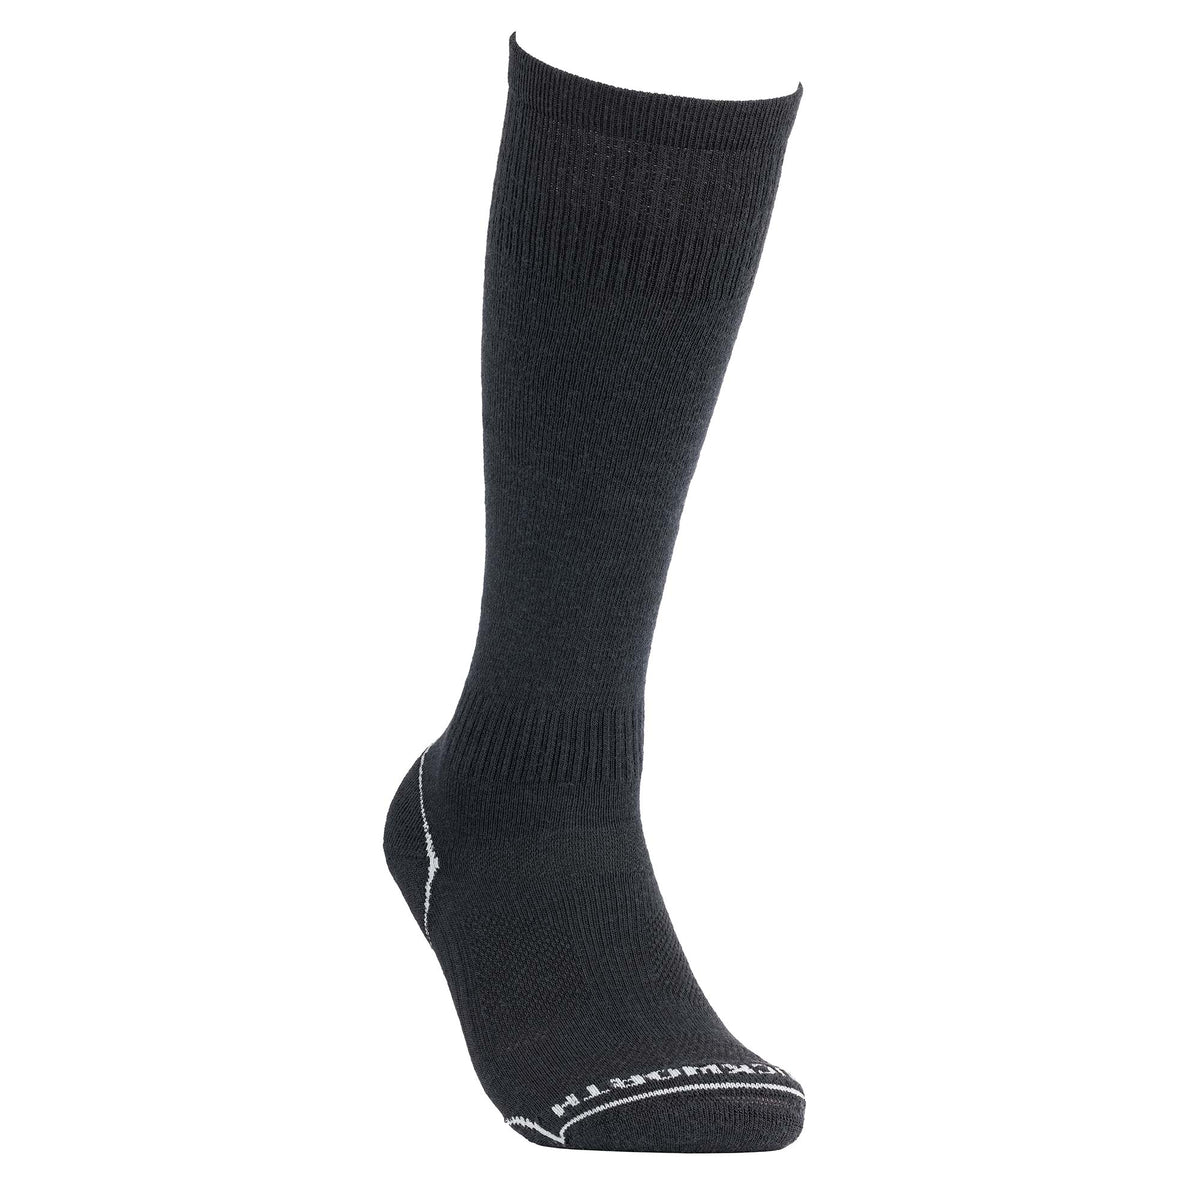 Over-the-calf Merino Cool Dress Socks, Men's Socks